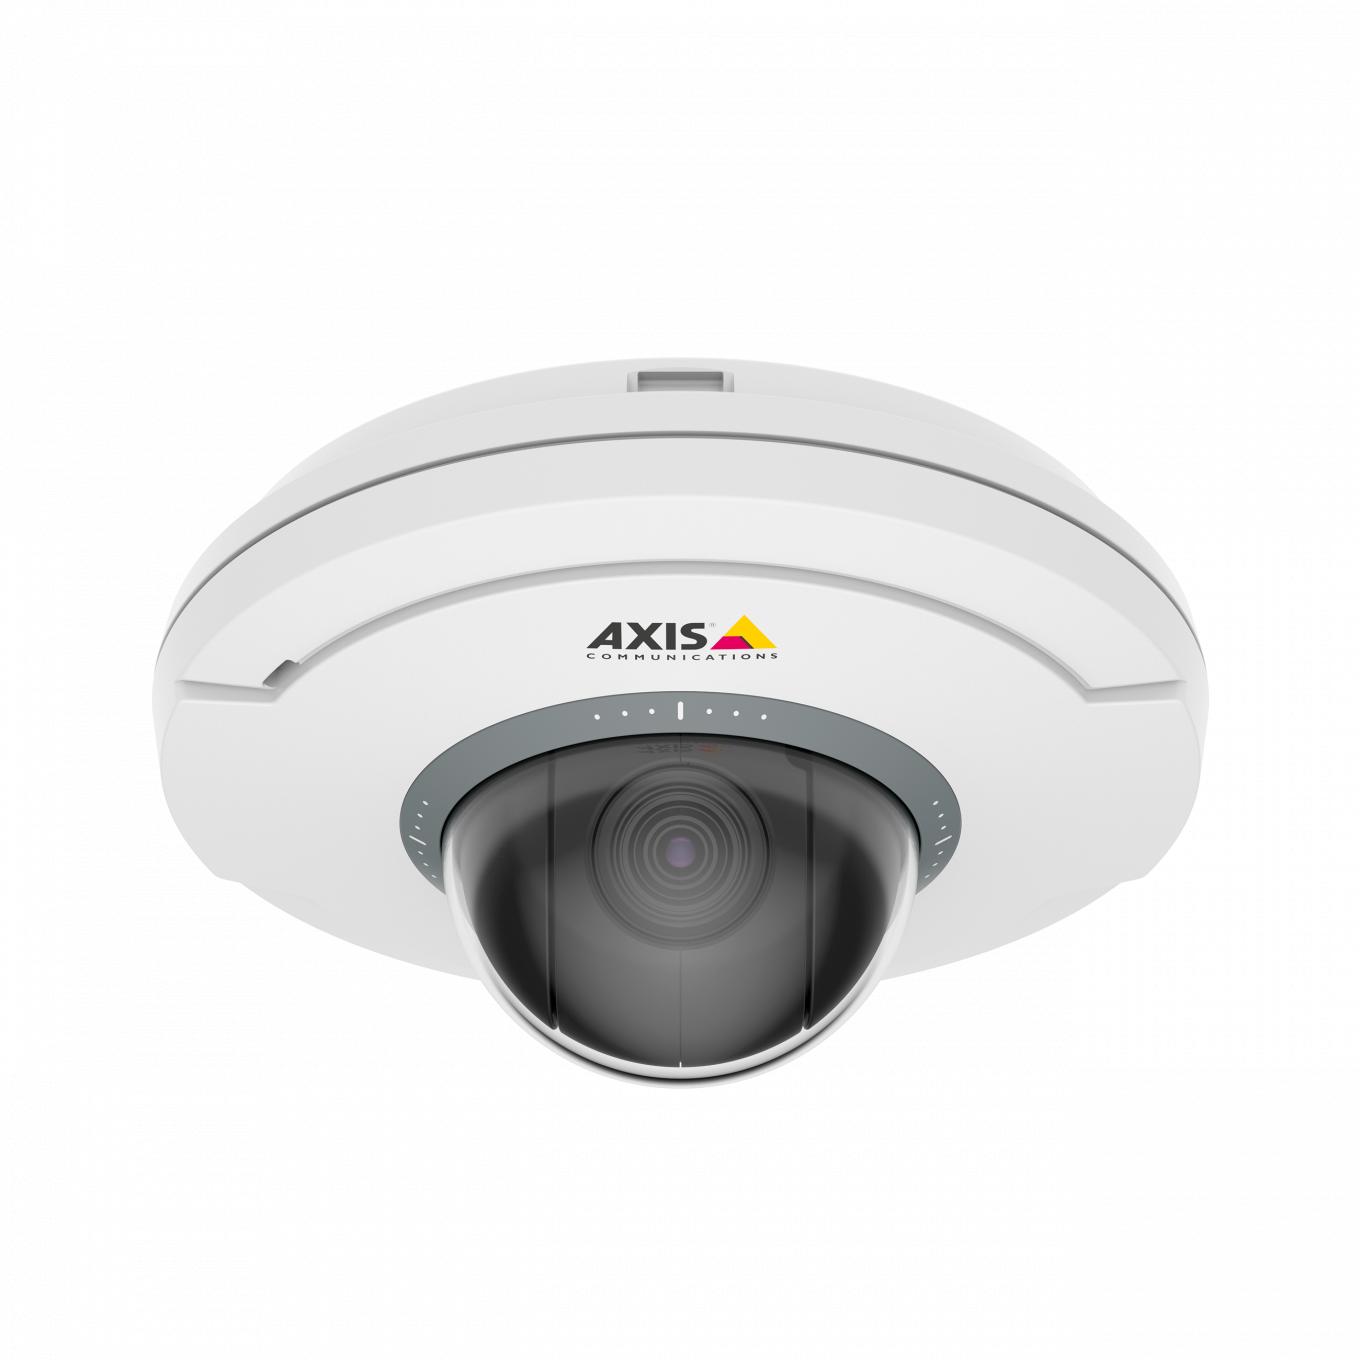 전면에서 본 Axis 로고가 있는 AXIS M5075 흰색 및 검정색 카메라